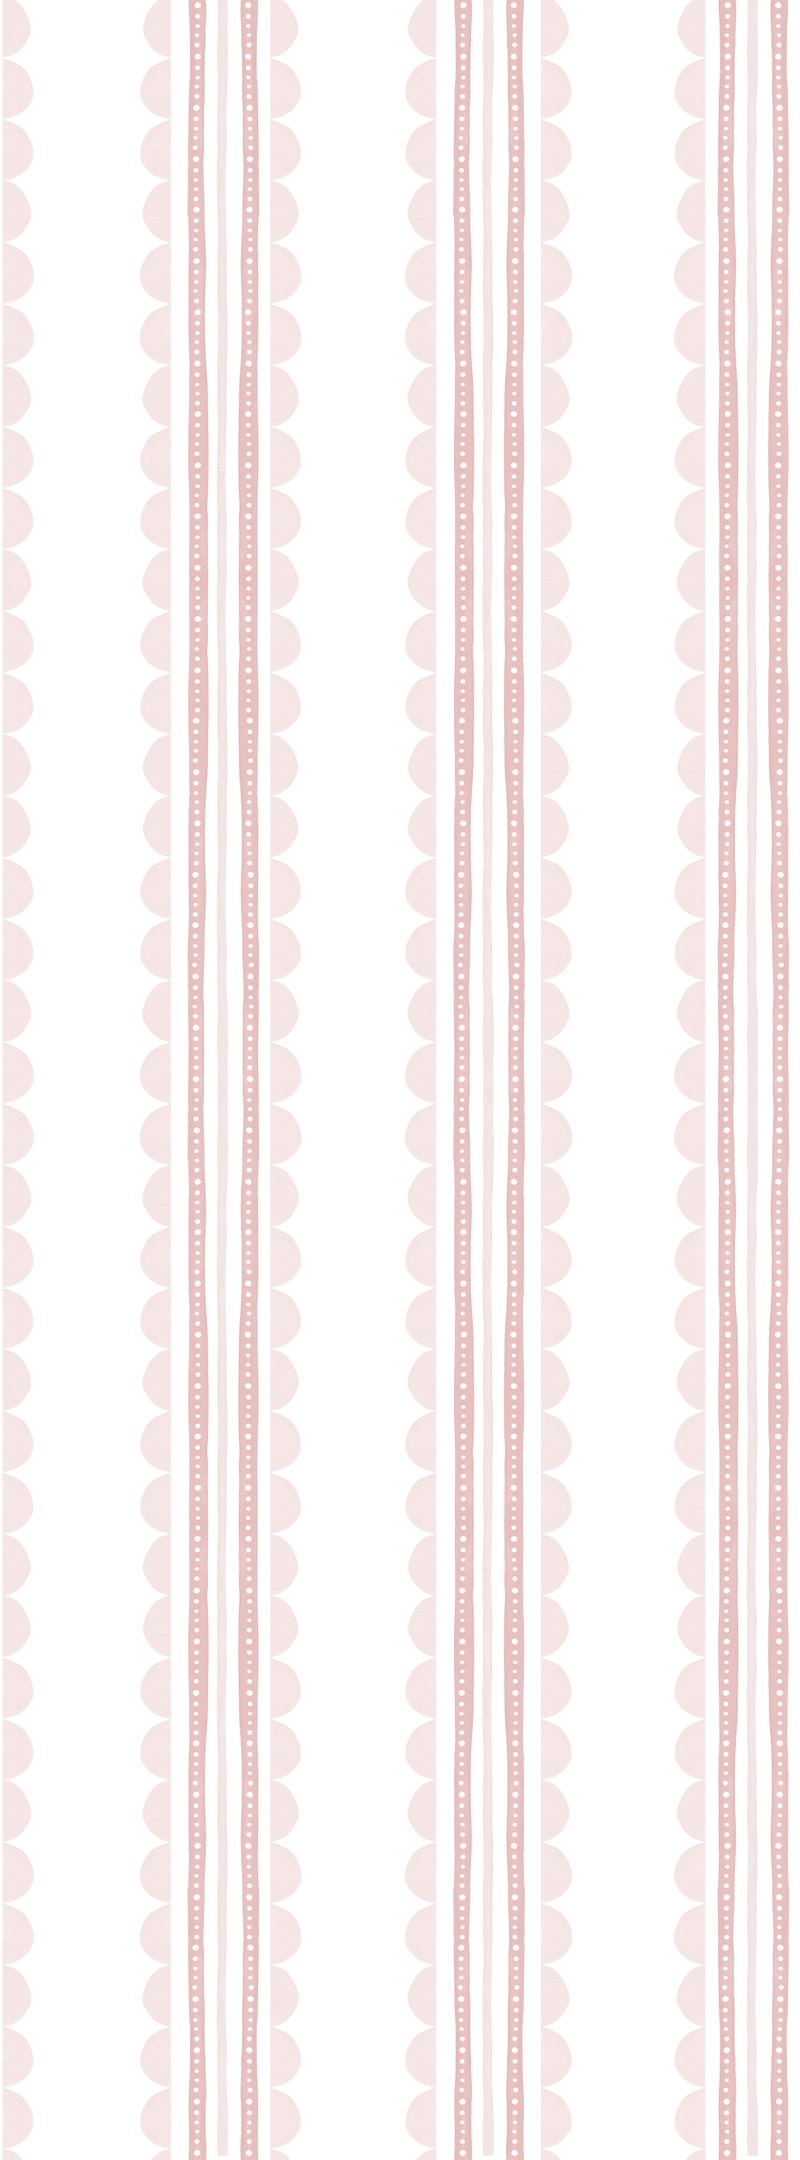 Papel de parede listras e ondinhas tons de rosa  T.Design - 100% celulose